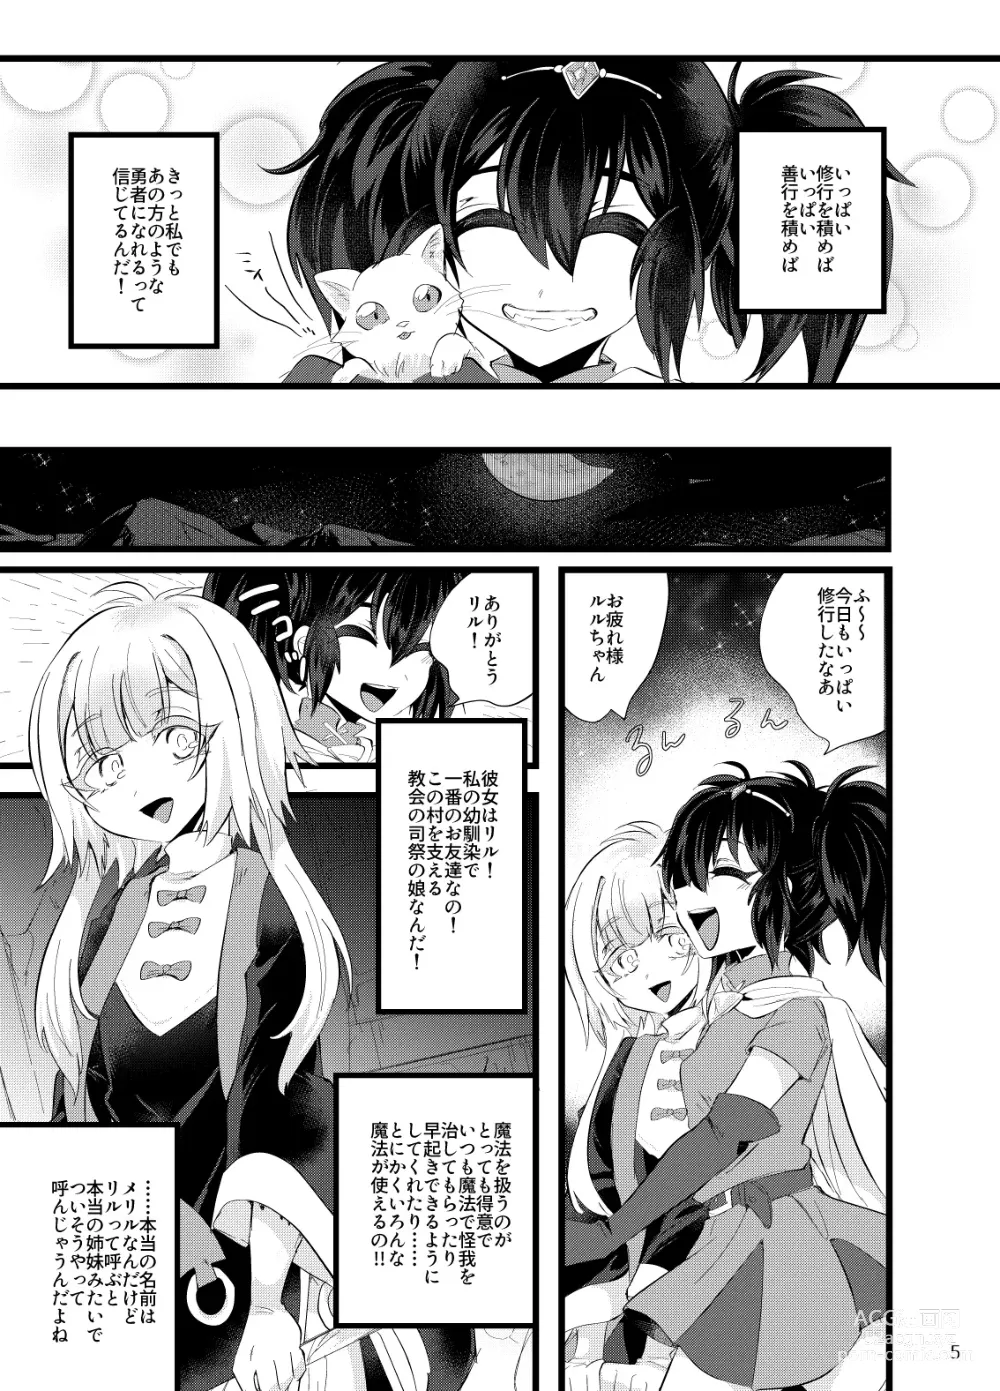 Page 6 of doujinshi Maen Yuugi